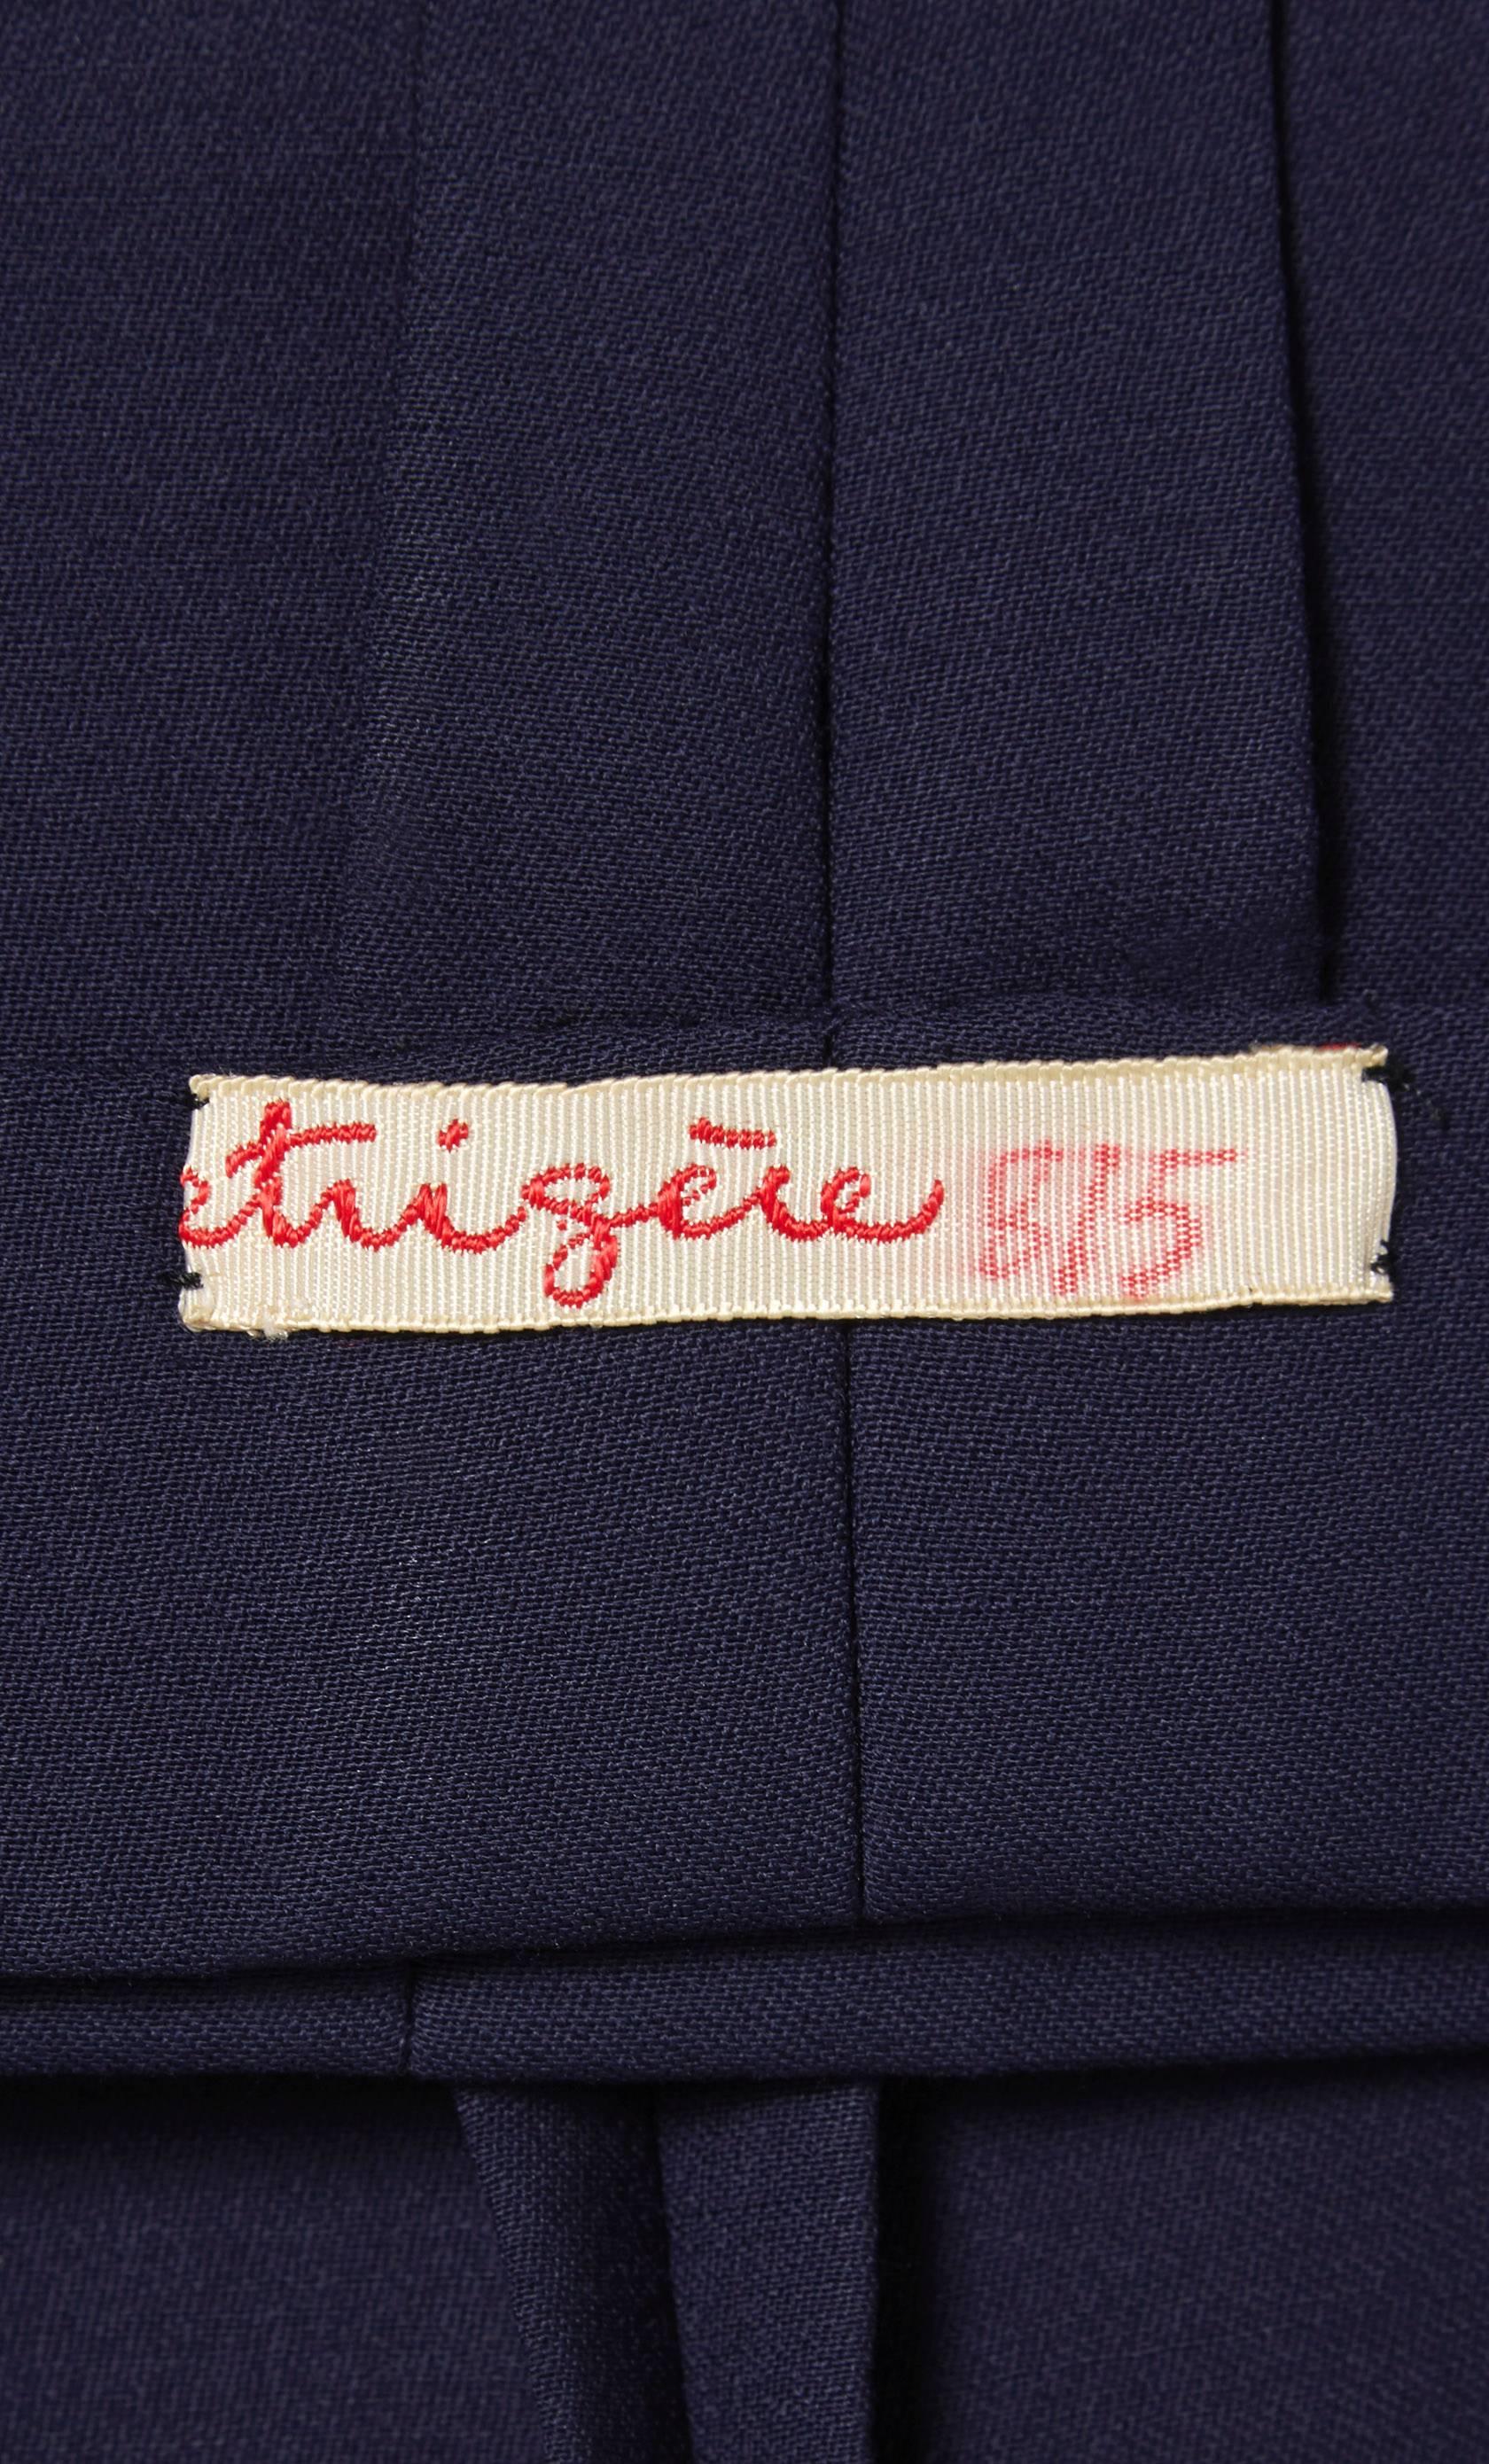 Women's Pauline Trigère navy skirt suit, circa 1980 For Sale